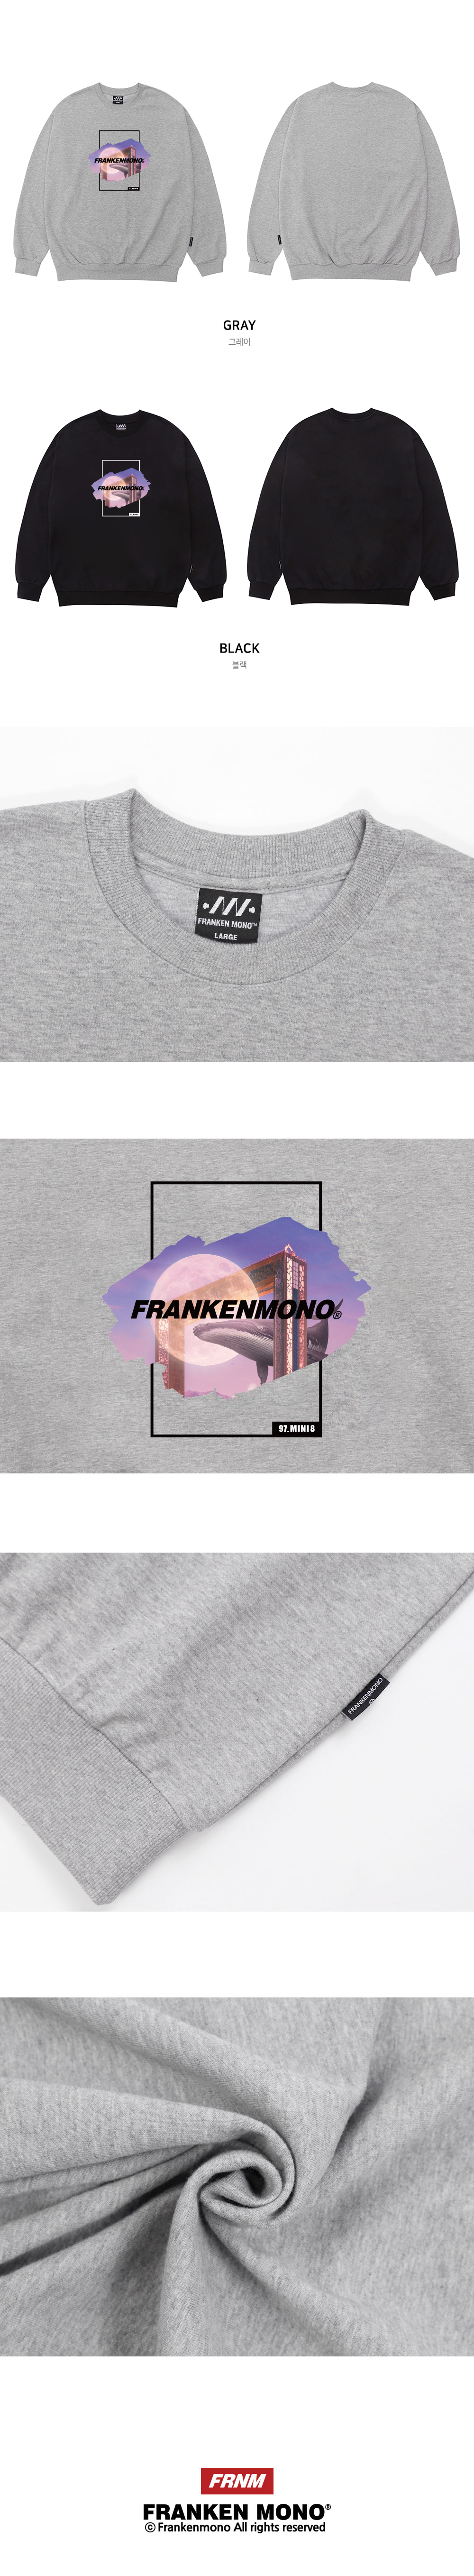 ����耳�紐⑤�� FRANKENMONO